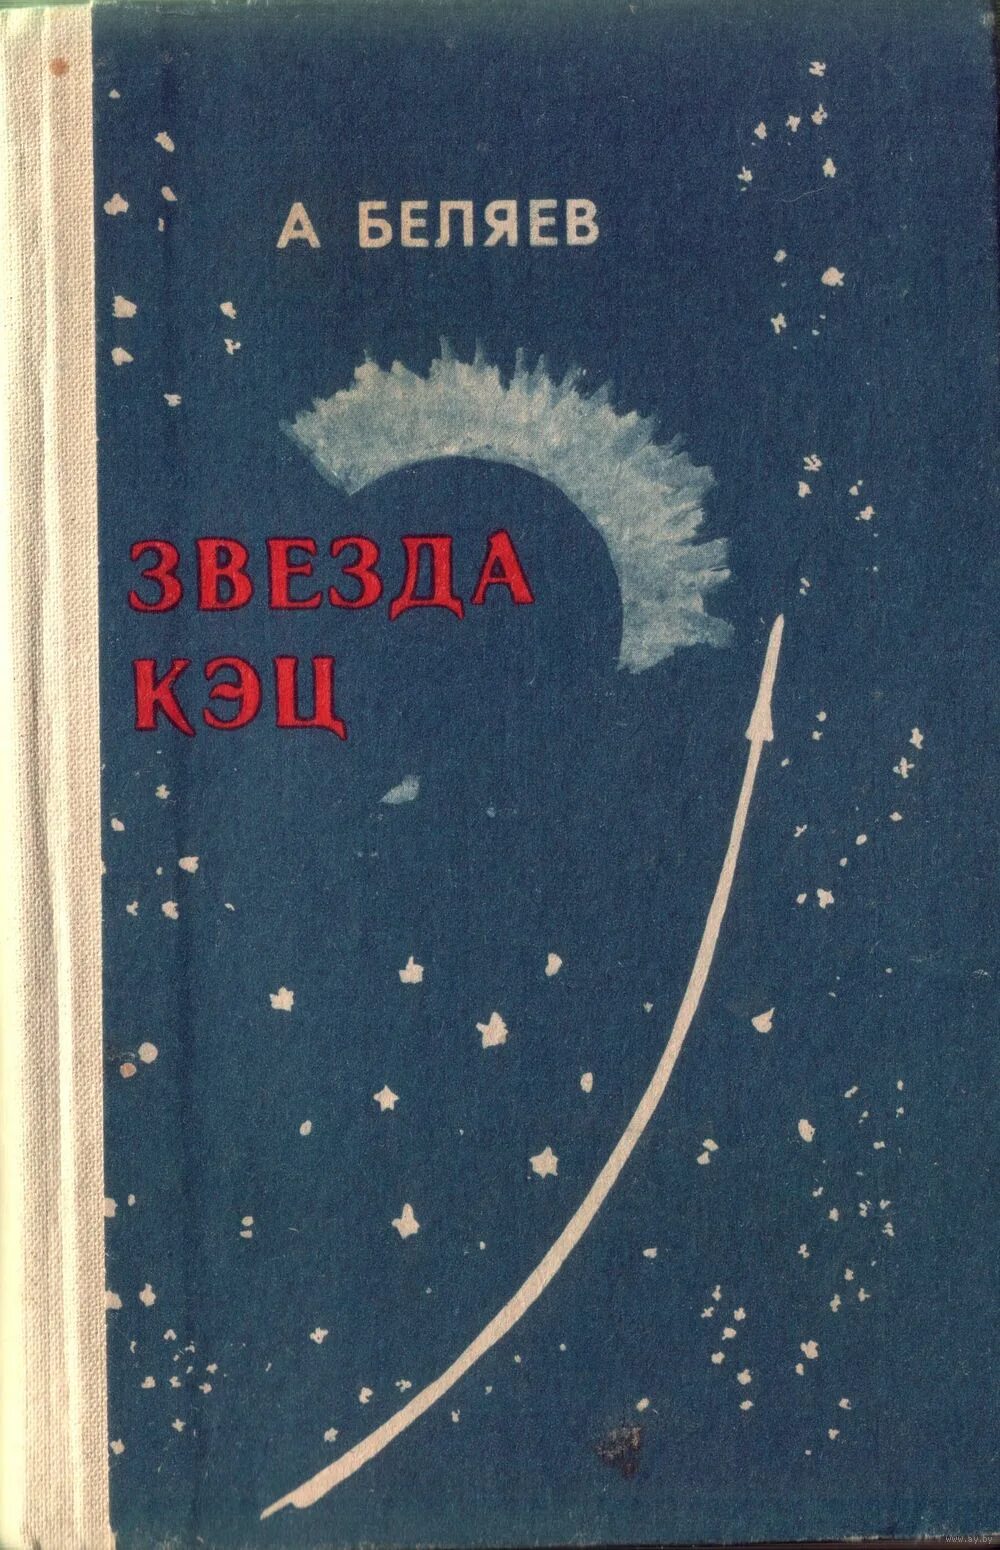 Беляева книги звезда кэц